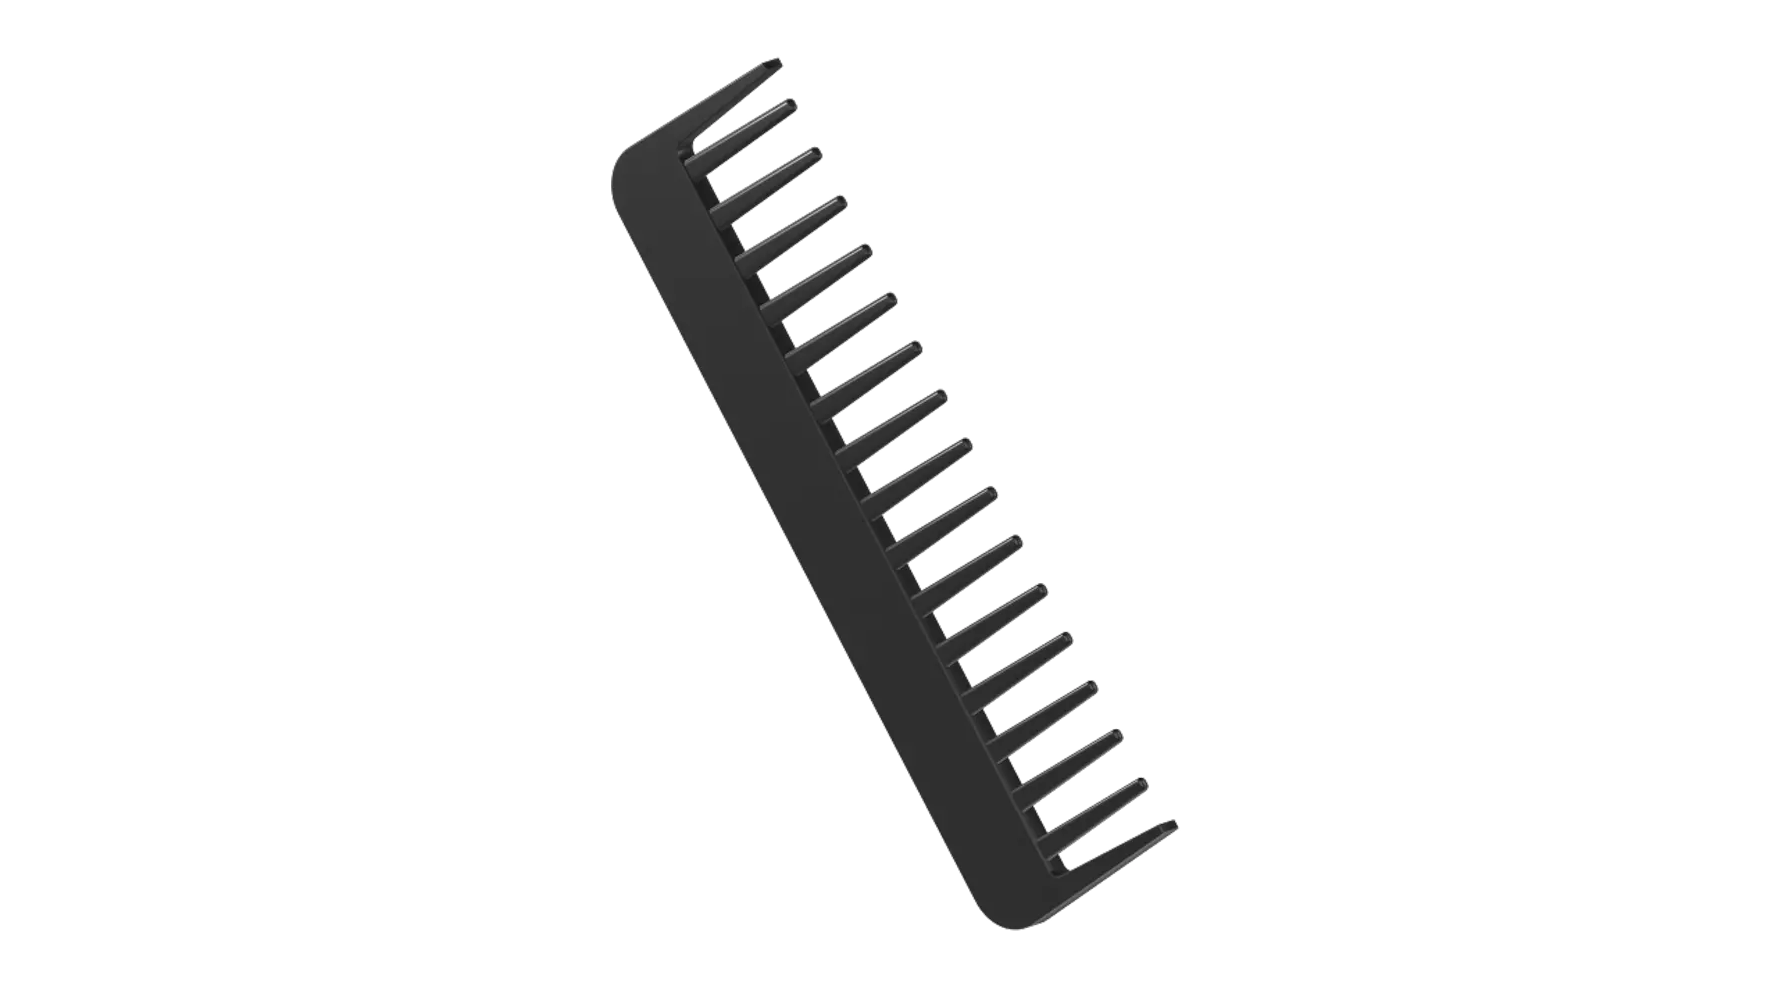 Comb 3D Graphic